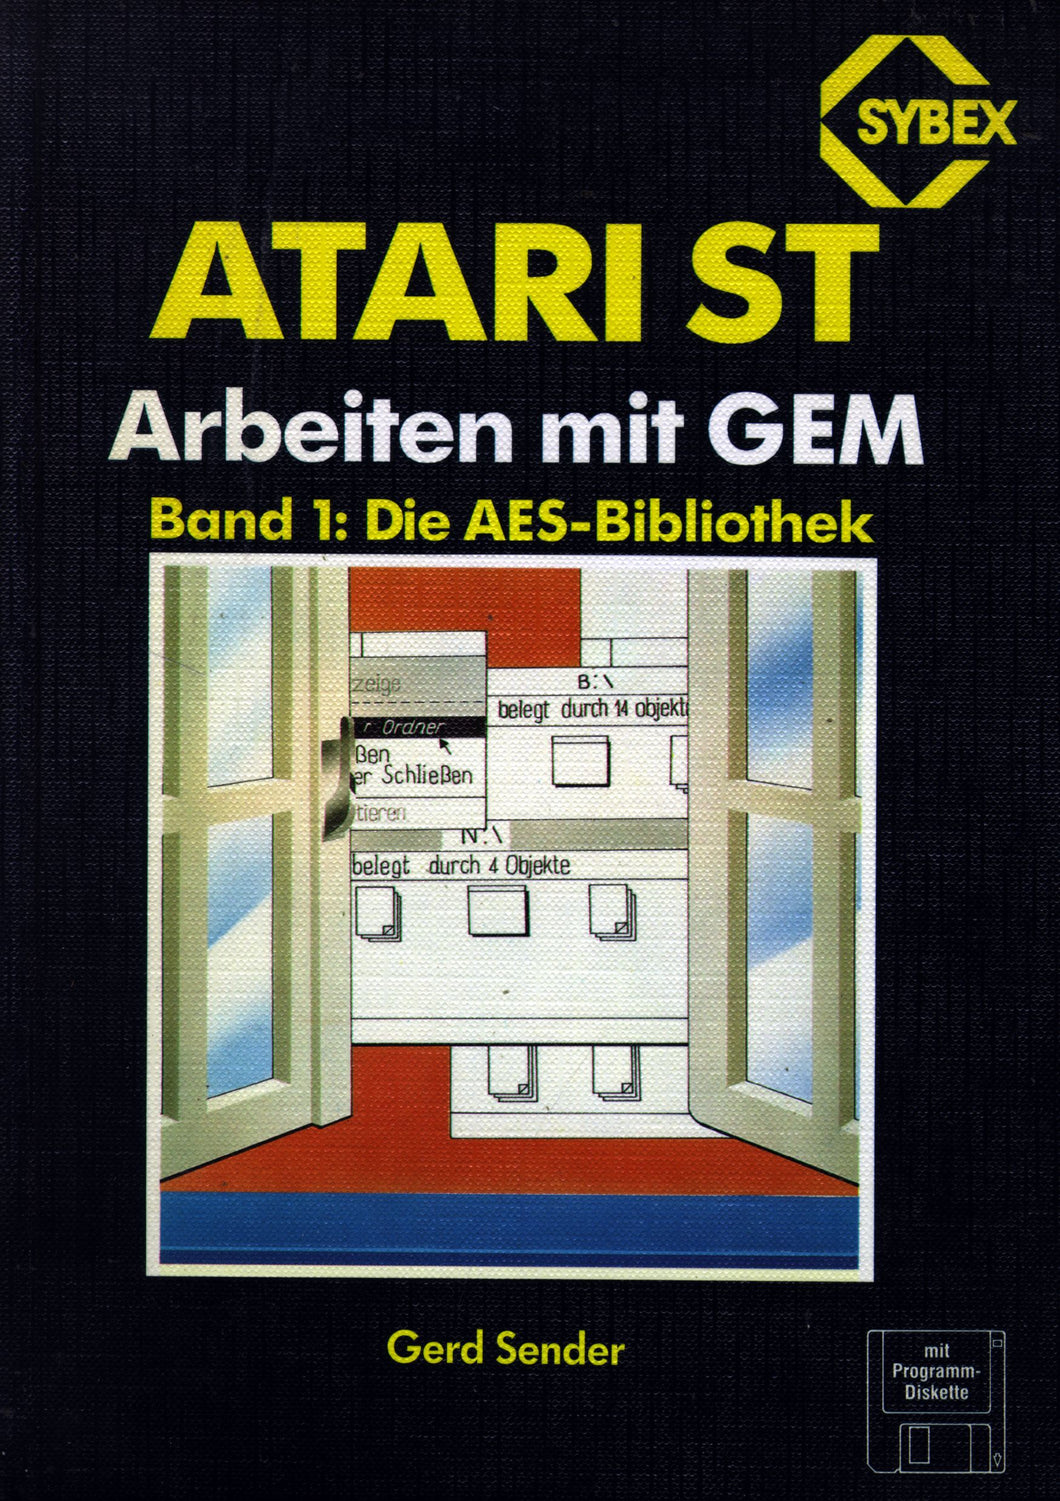 ATARI ST Arbeiten mit GEM - Band 1: Die AES-Bibliothek Vorderseite